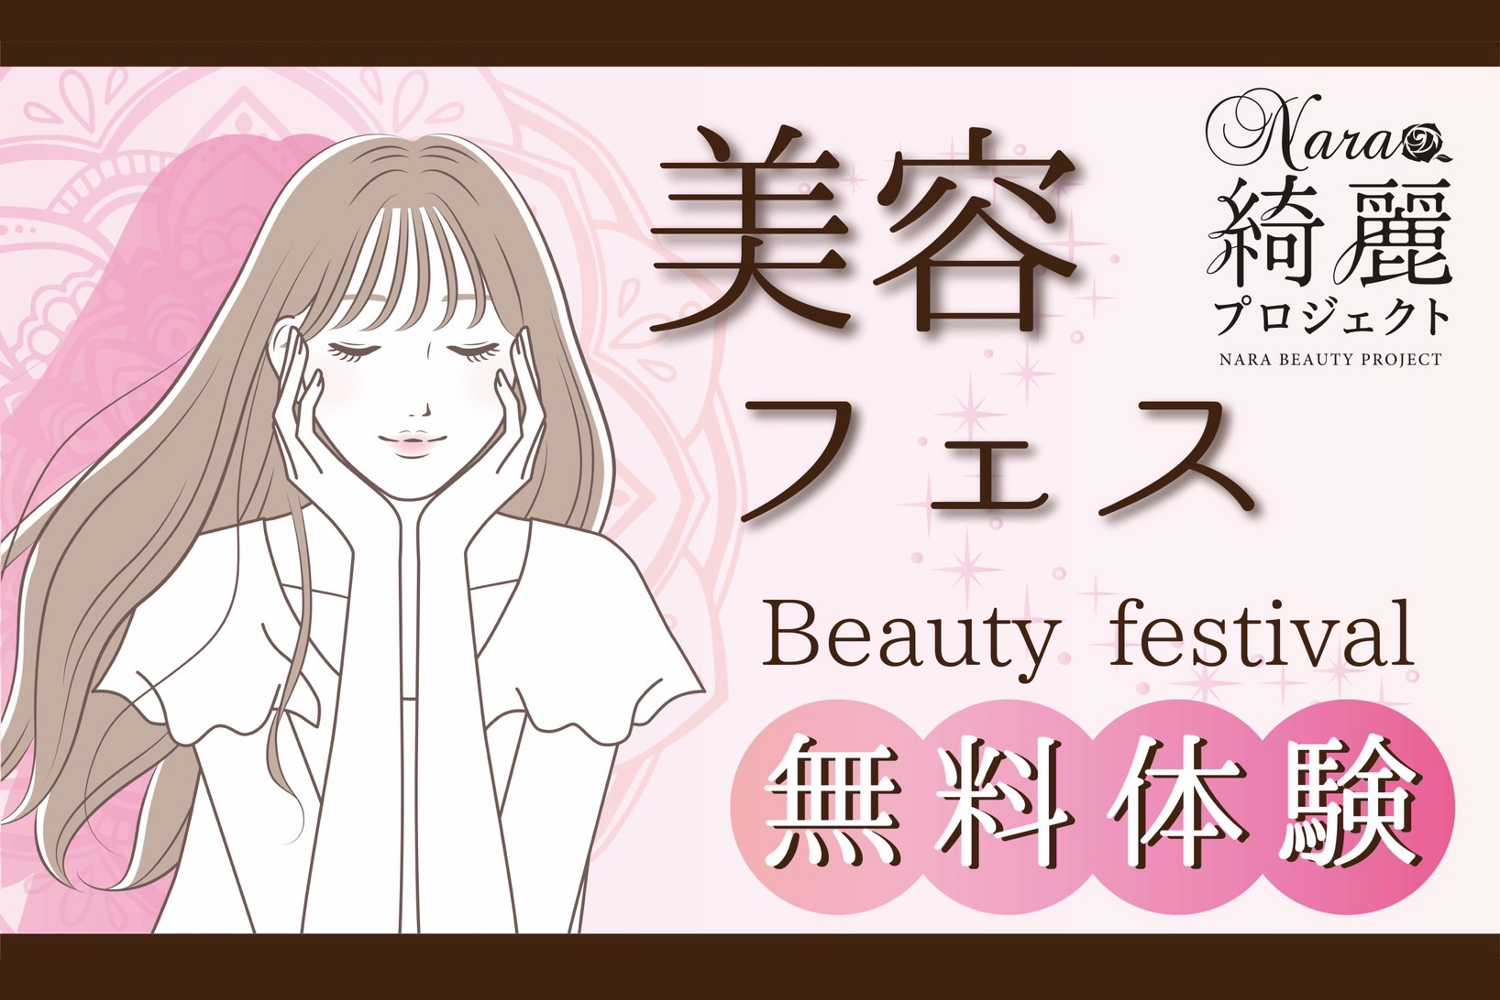 SoftBankとのコラボレーションイベント「美容フェス」を開催しました